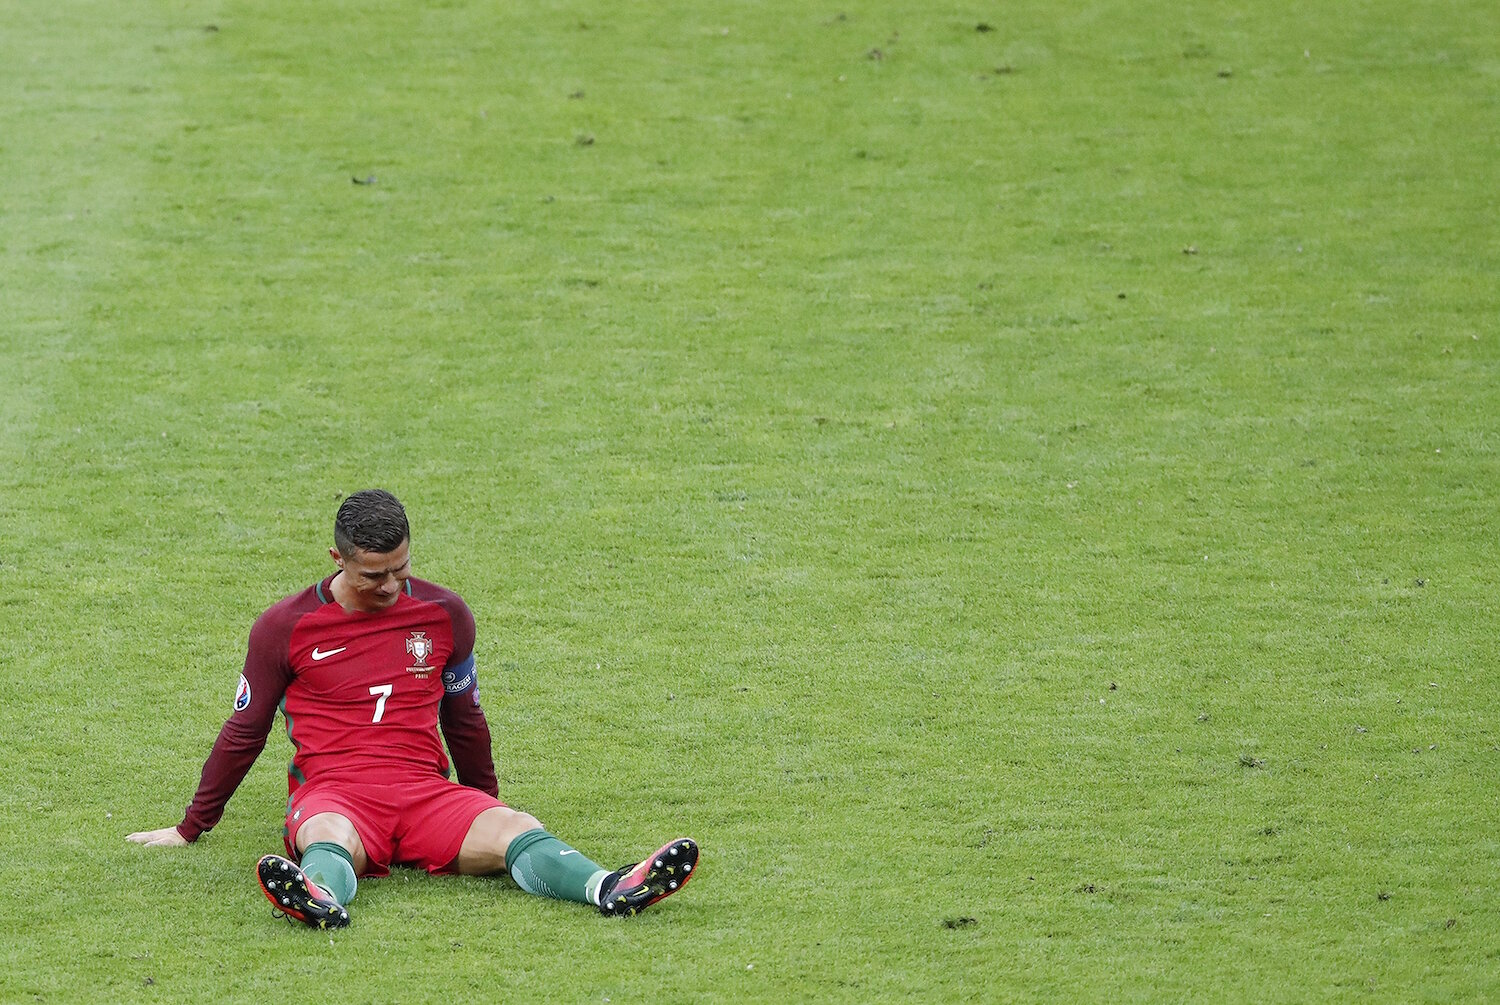 <p>10 июля. Париж, Франция.&nbsp;Капитан сборной Португалии Криштиану Роналду во время финального матча Чемпионата Европы с Францией получил травму, после которой больше не смог продолжить игру.</p>